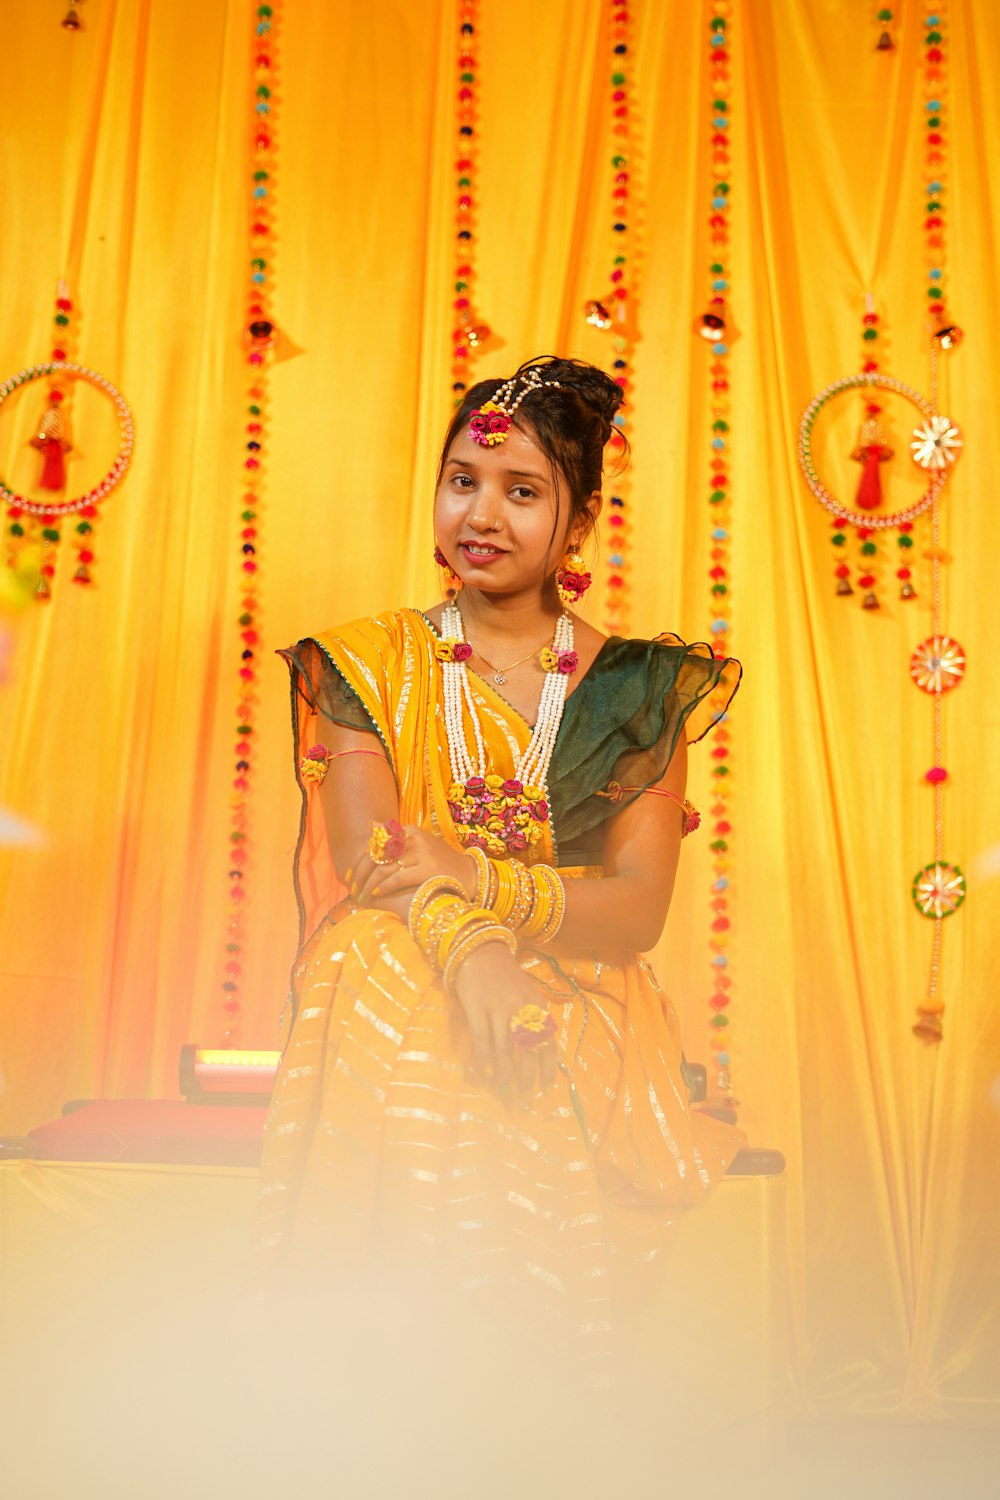 Ein junges Mädchen sitzt vor einem gelben Vorhang